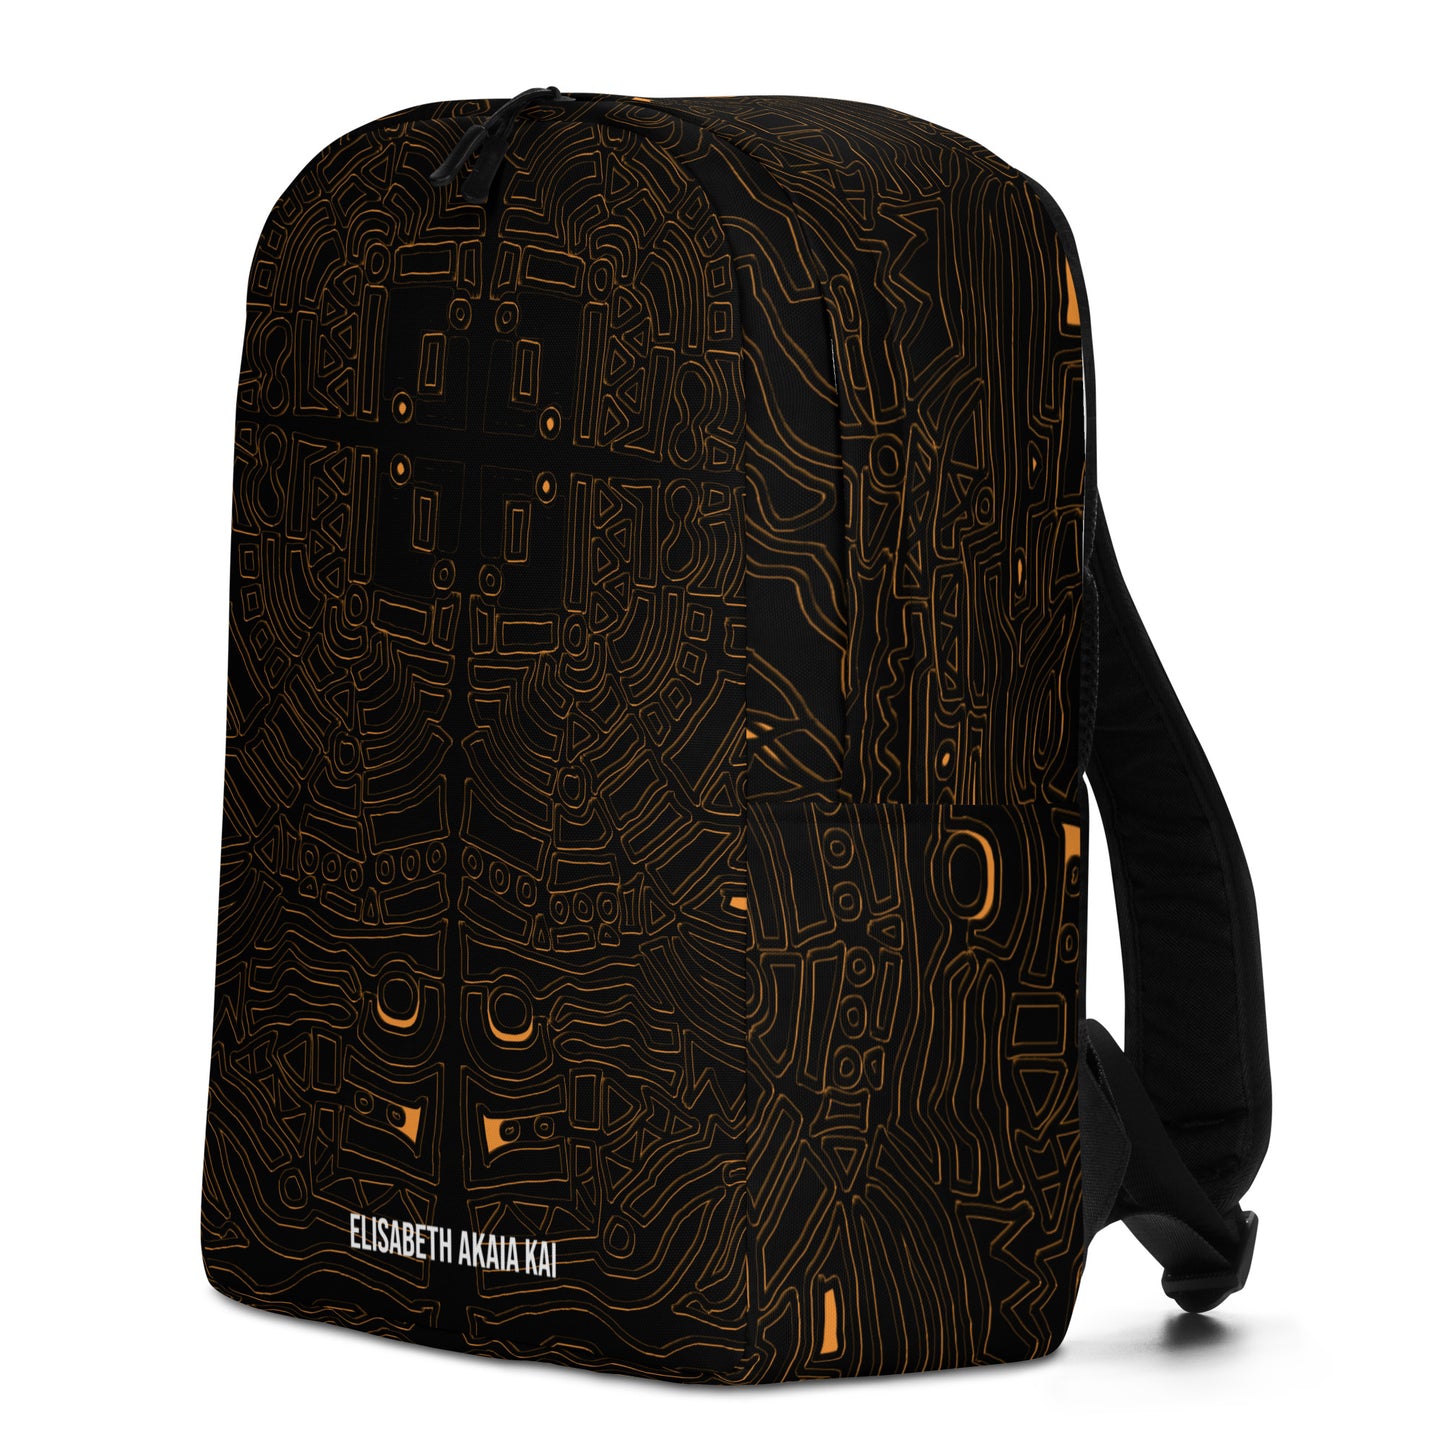 Obatala - Minimalist backpack